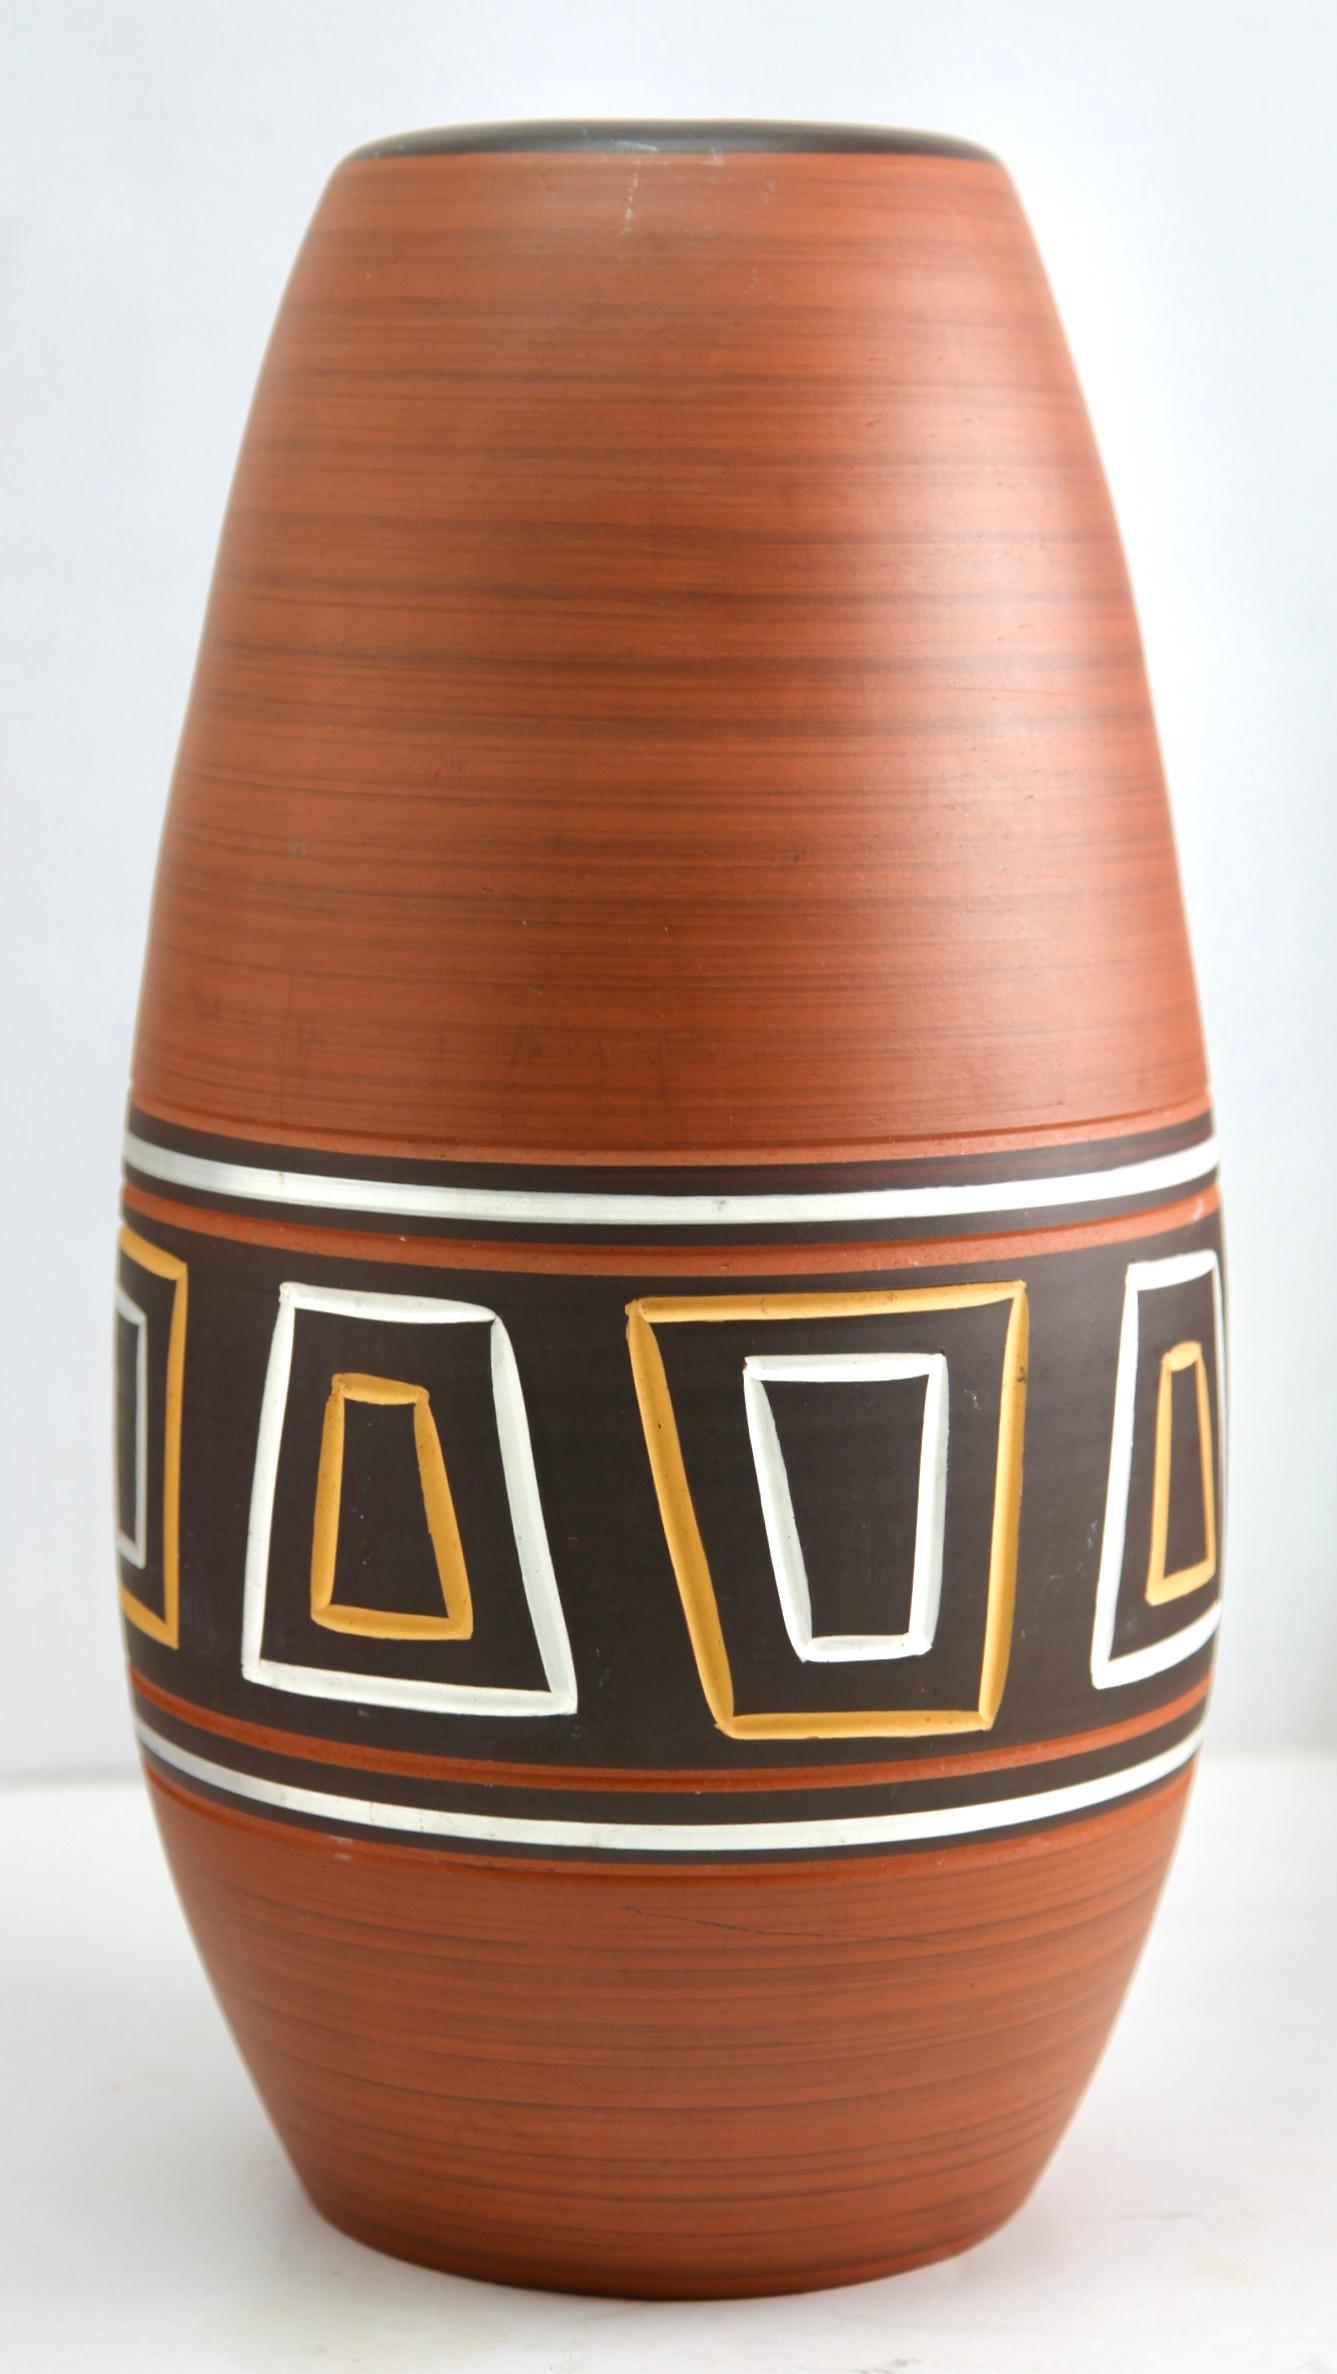 Ce vase vintage original a été produit dans les années 1970 en Allemagne. Il est fabriqué en poterie céramique.
Le fond est marqué du numéro de série du vase 45-40 Handarbeit
Un design direct et minimaliste de l'ère du design des années 1960.